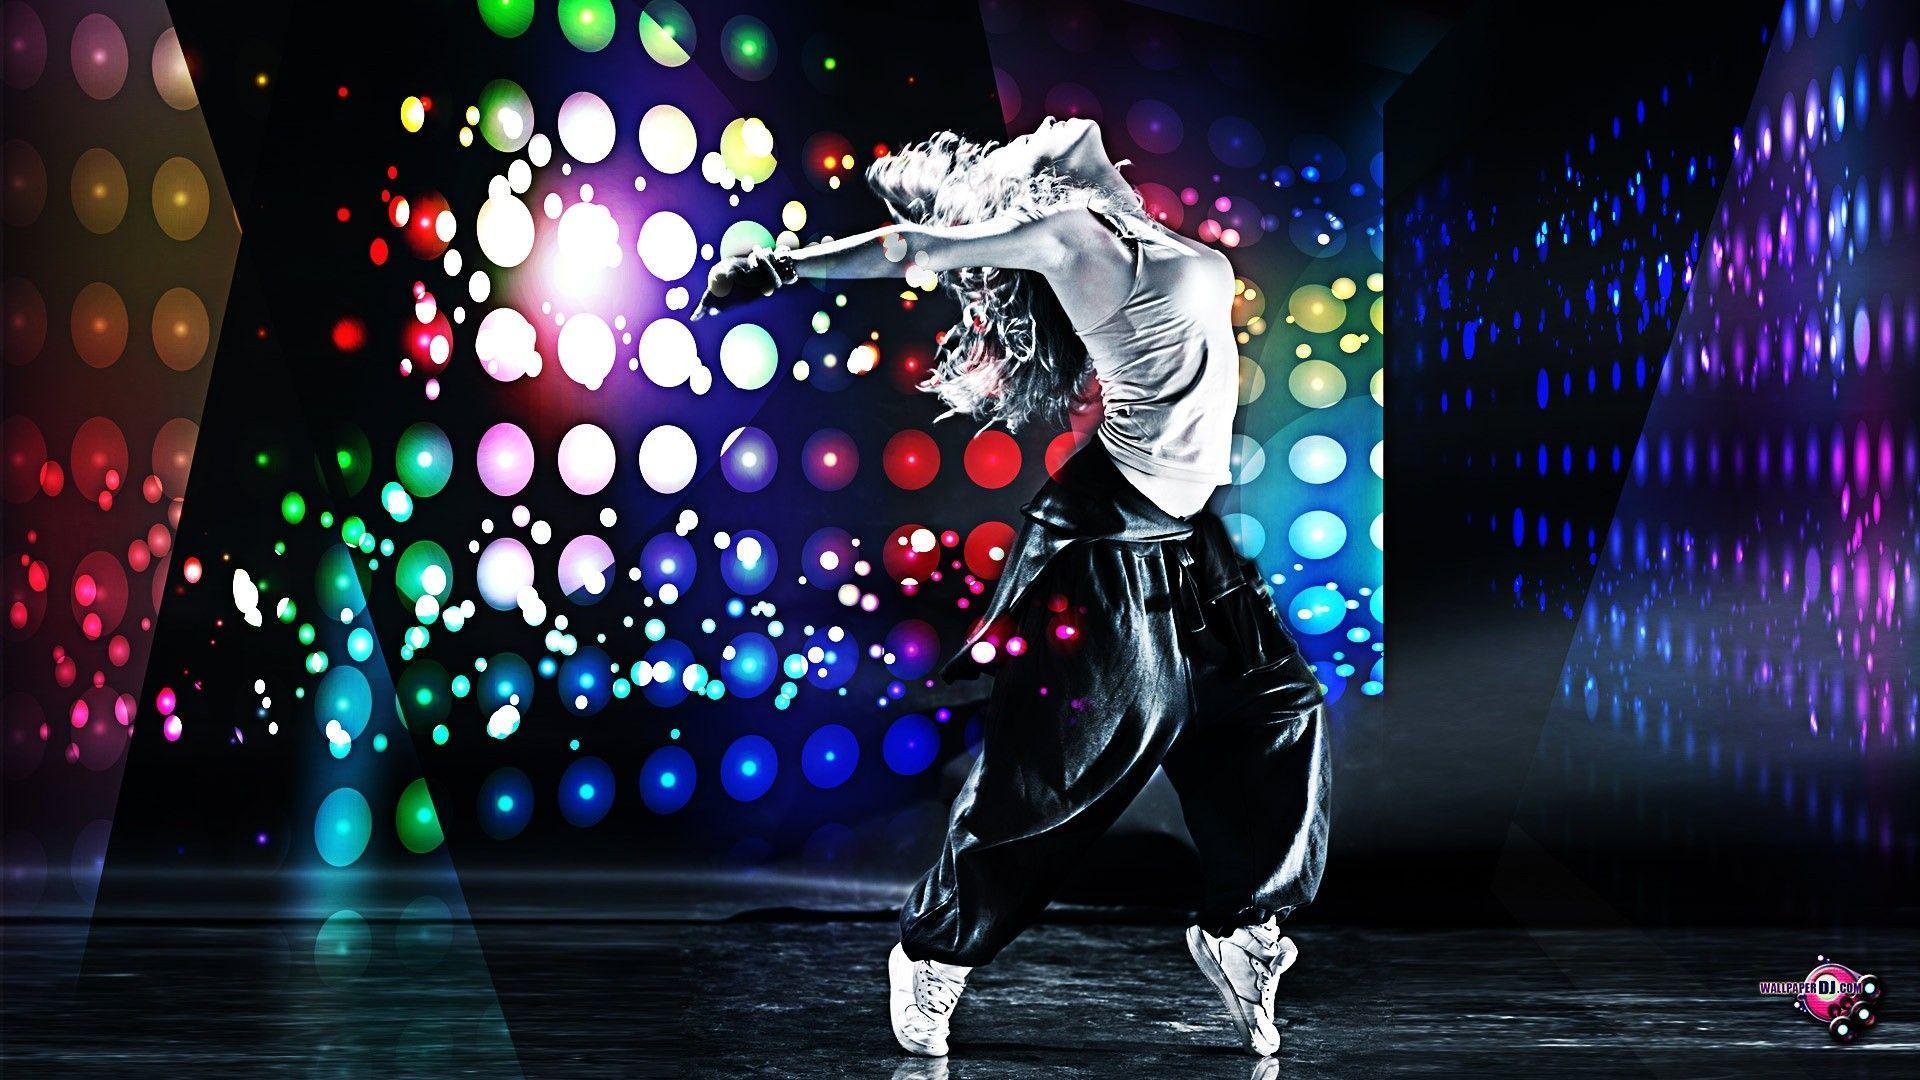 Nothing but Dance & Music! Hip Hop Dance Through Music. Dance wallpaper, Dance background, Hip hop wallpaper